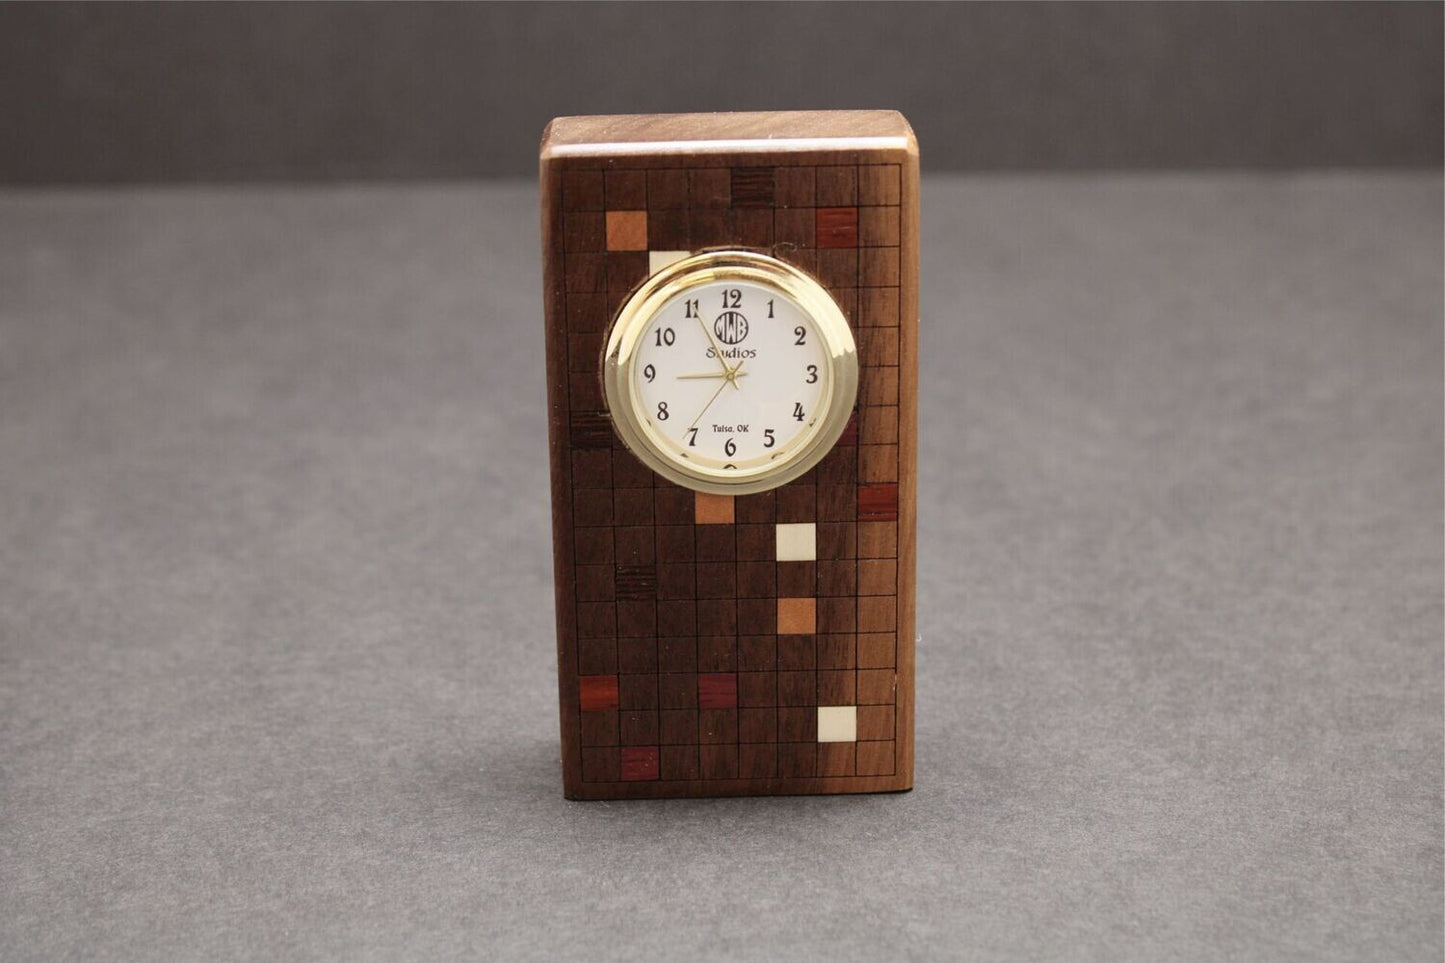 Inlaid Miniature Desk Clock.  MDC-5      Made in the U.S.